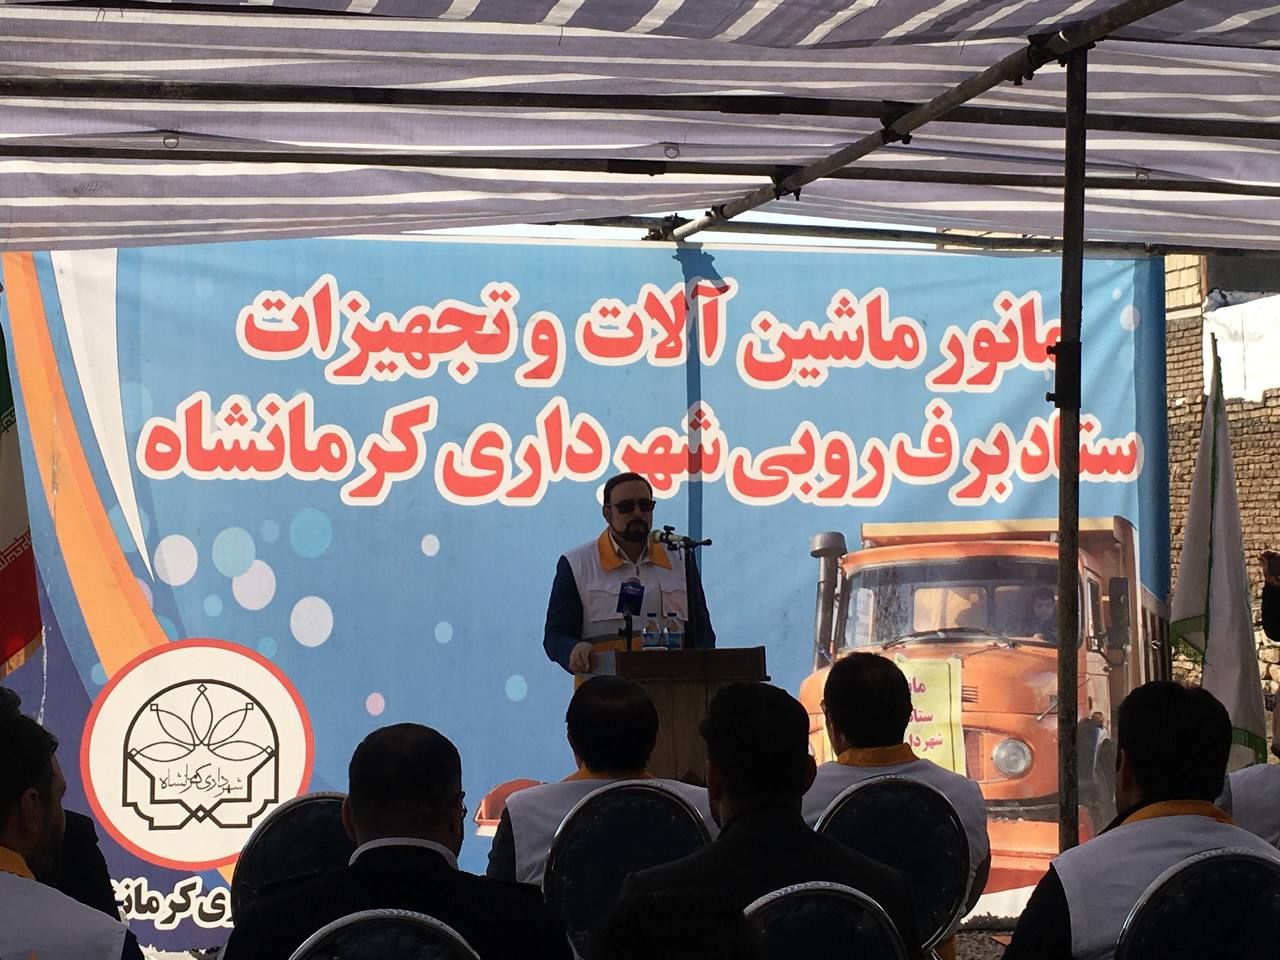 ۱۲۰۰ نیروی خدماتی و ۵۰ دستگاه ماشین آلات در ستاد برف روبی شهرداری کرمانشاه آماده اند